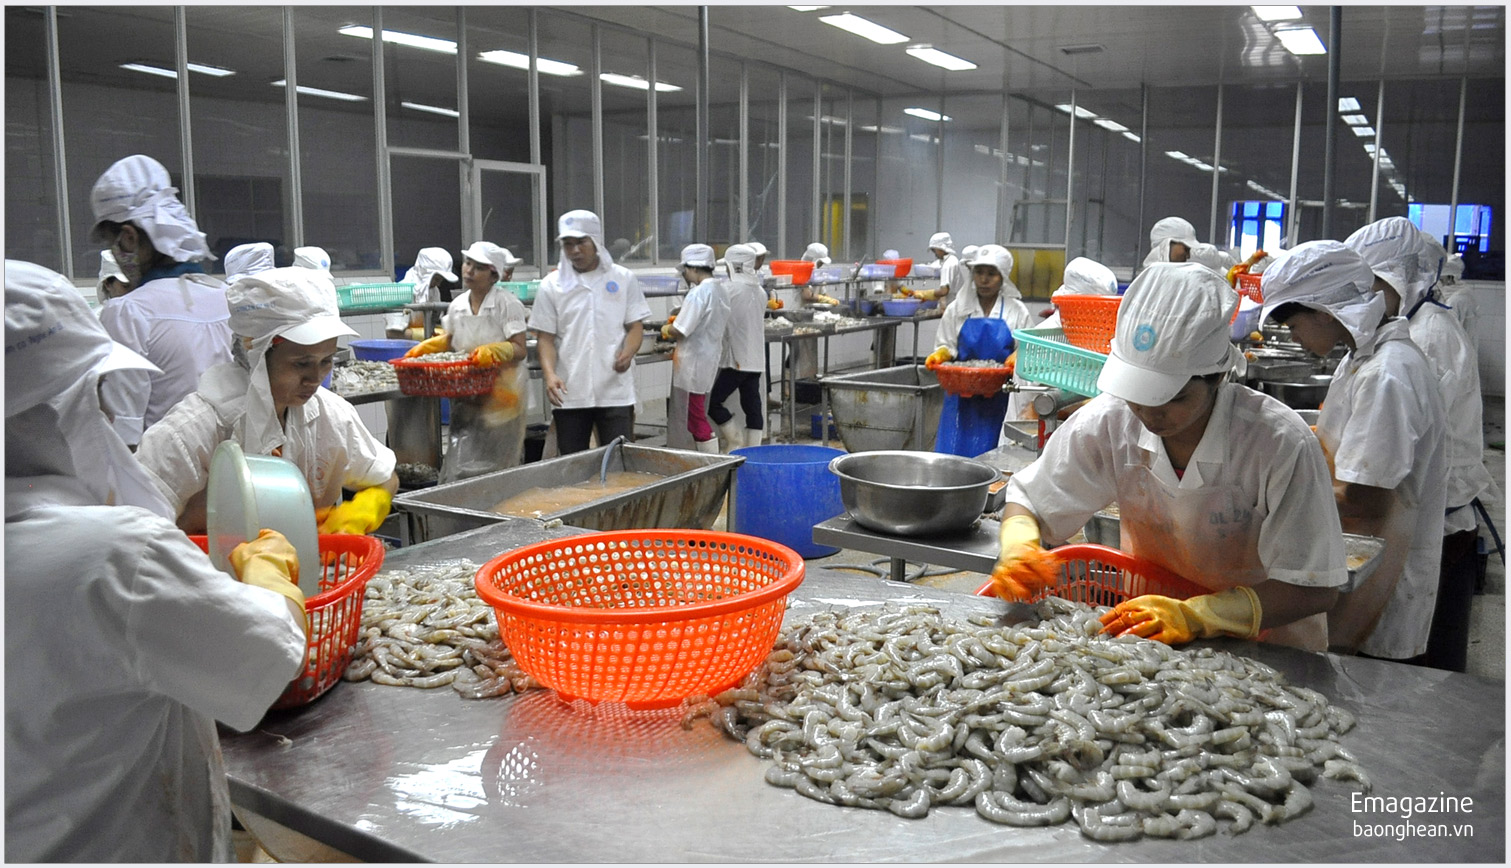 Chế biến tôm xuất khẩu tại Công ty 38B ở thị trấn Cầu Giát (Quỳnh Lưu). Ảnh: Nguyễn Hải